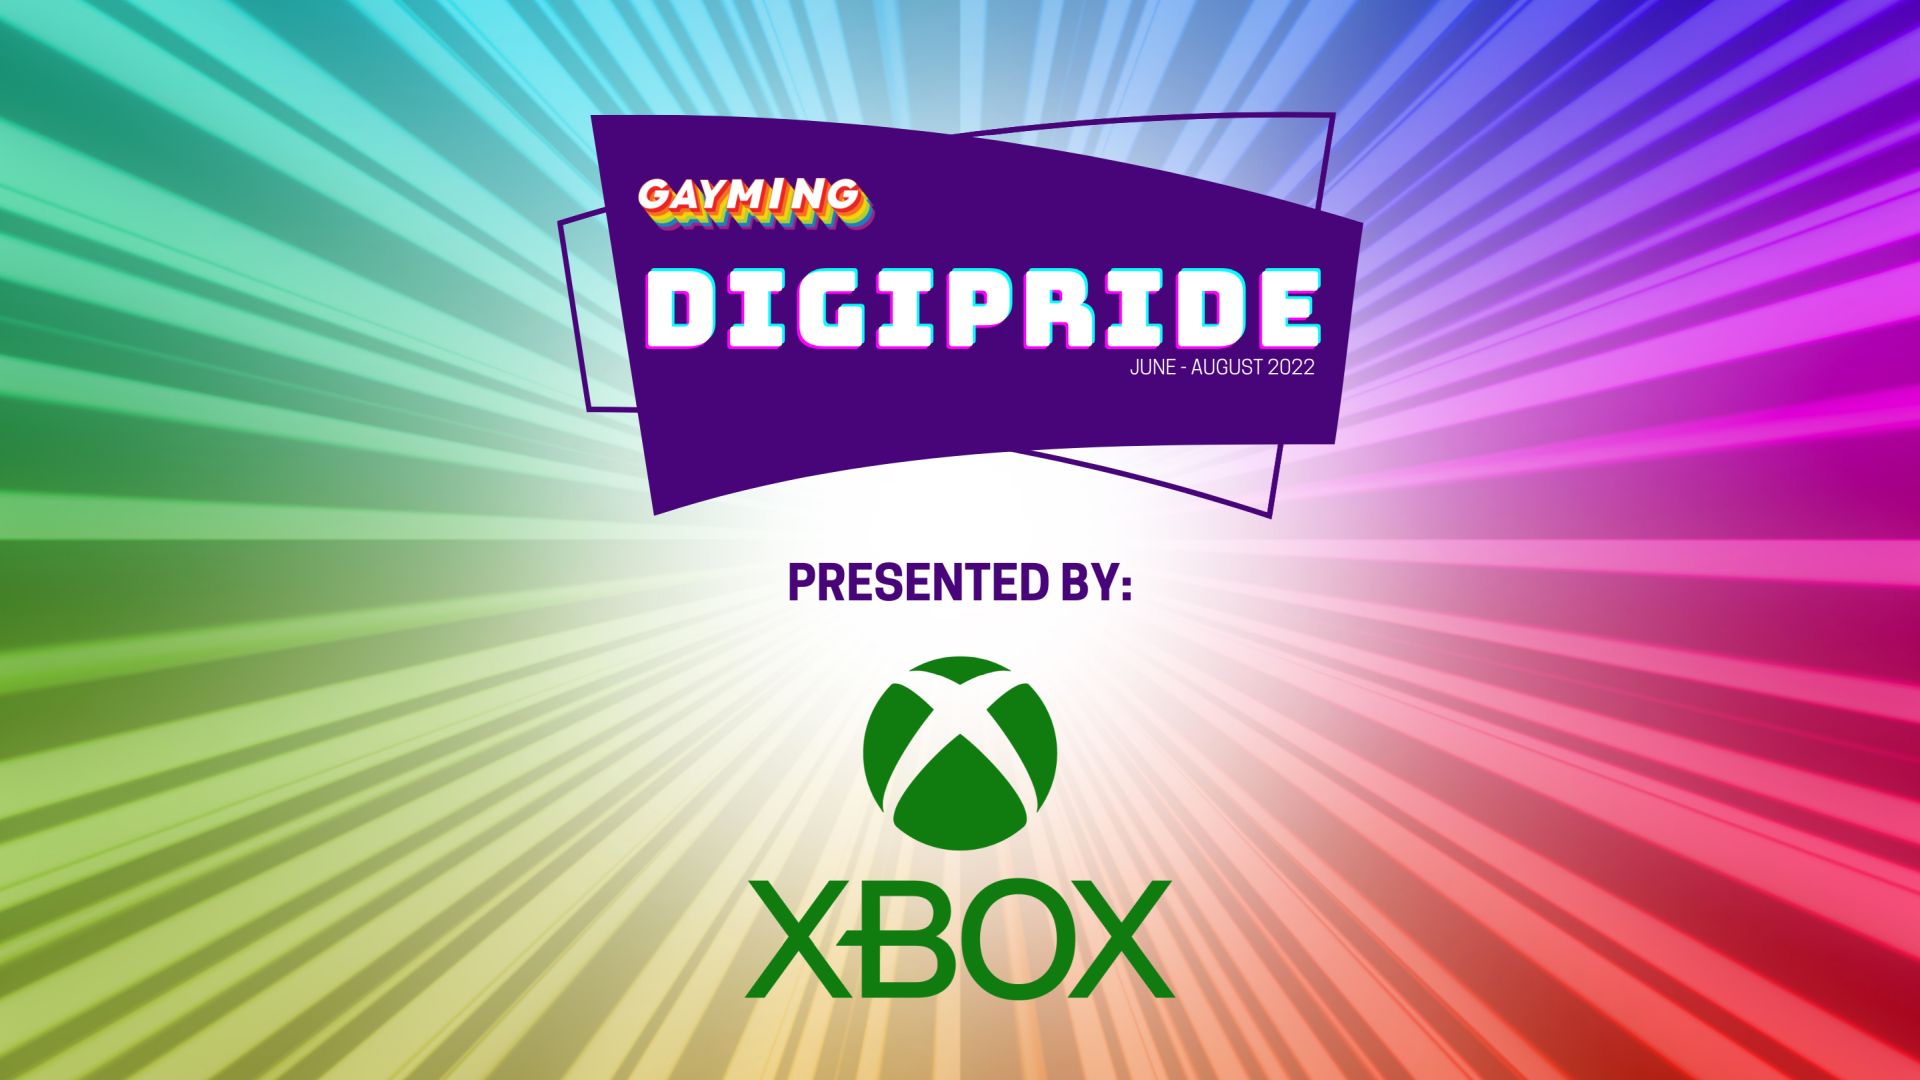 กราฟิกเหตุการณ์ DIGIPRIDE พร้อมโลโก้ Xbox ที่มีสีเขียวสดใส ม่วง ชมพู เหลือง และเขียวที่เปล่งประกายจากแสงระยิบระยับตรงกลาง